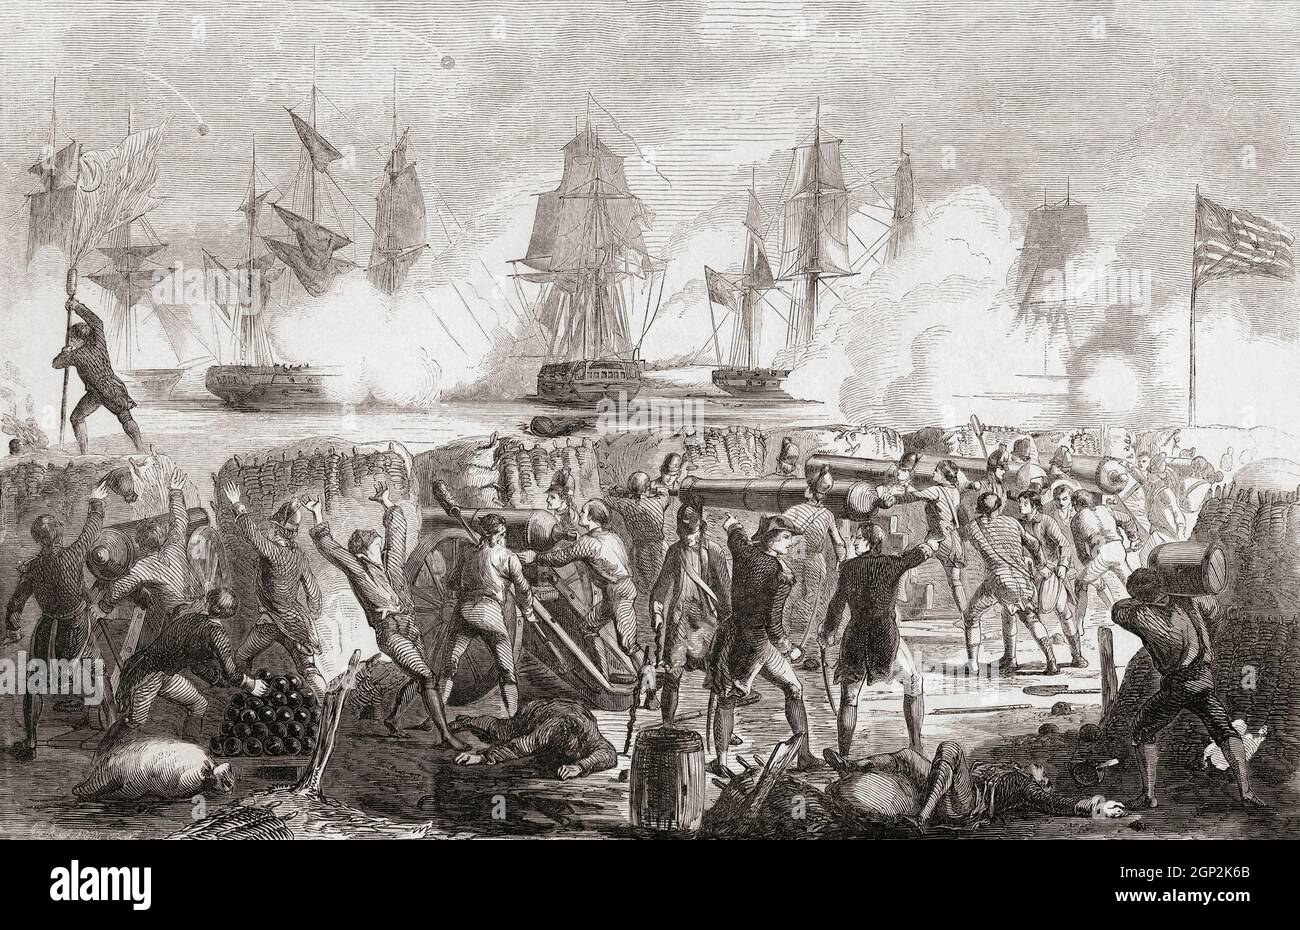 Der Angriff auf Fort Moltrie, Sullivans Insel, South Carolina, am 28. Juni 1776 während der amerikanischen Revolution. Das Fort, damals Fort Sullivan genannt, wurde zur Verteidigung von Charleston, South Carolina, erbaut, aber nur teilweise fertiggestellt, als neun britische Kriegsschiffe Angriffen. Die Festung widerstand jedoch ihrem Bombardement und wurde gezwungen, sich unter schwerem Verteidigungsfeuer zurückzuziehen. Der Kommandant der Festung während der Schlacht war William Moltyre und die Festung wurde später in seiner Ehre umbenannt. Stockfoto